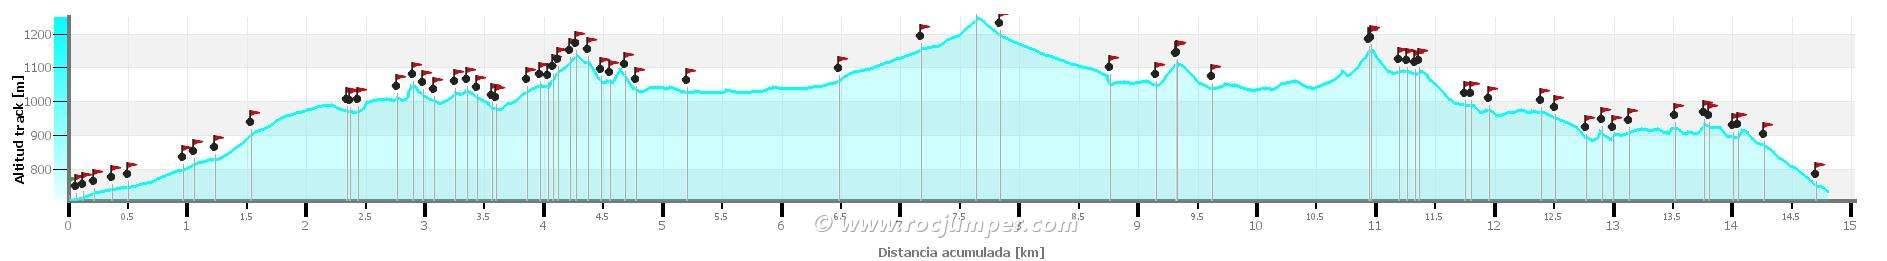 Altimetría - 15 Ermitas + 3 x 100Cims de Montserrat